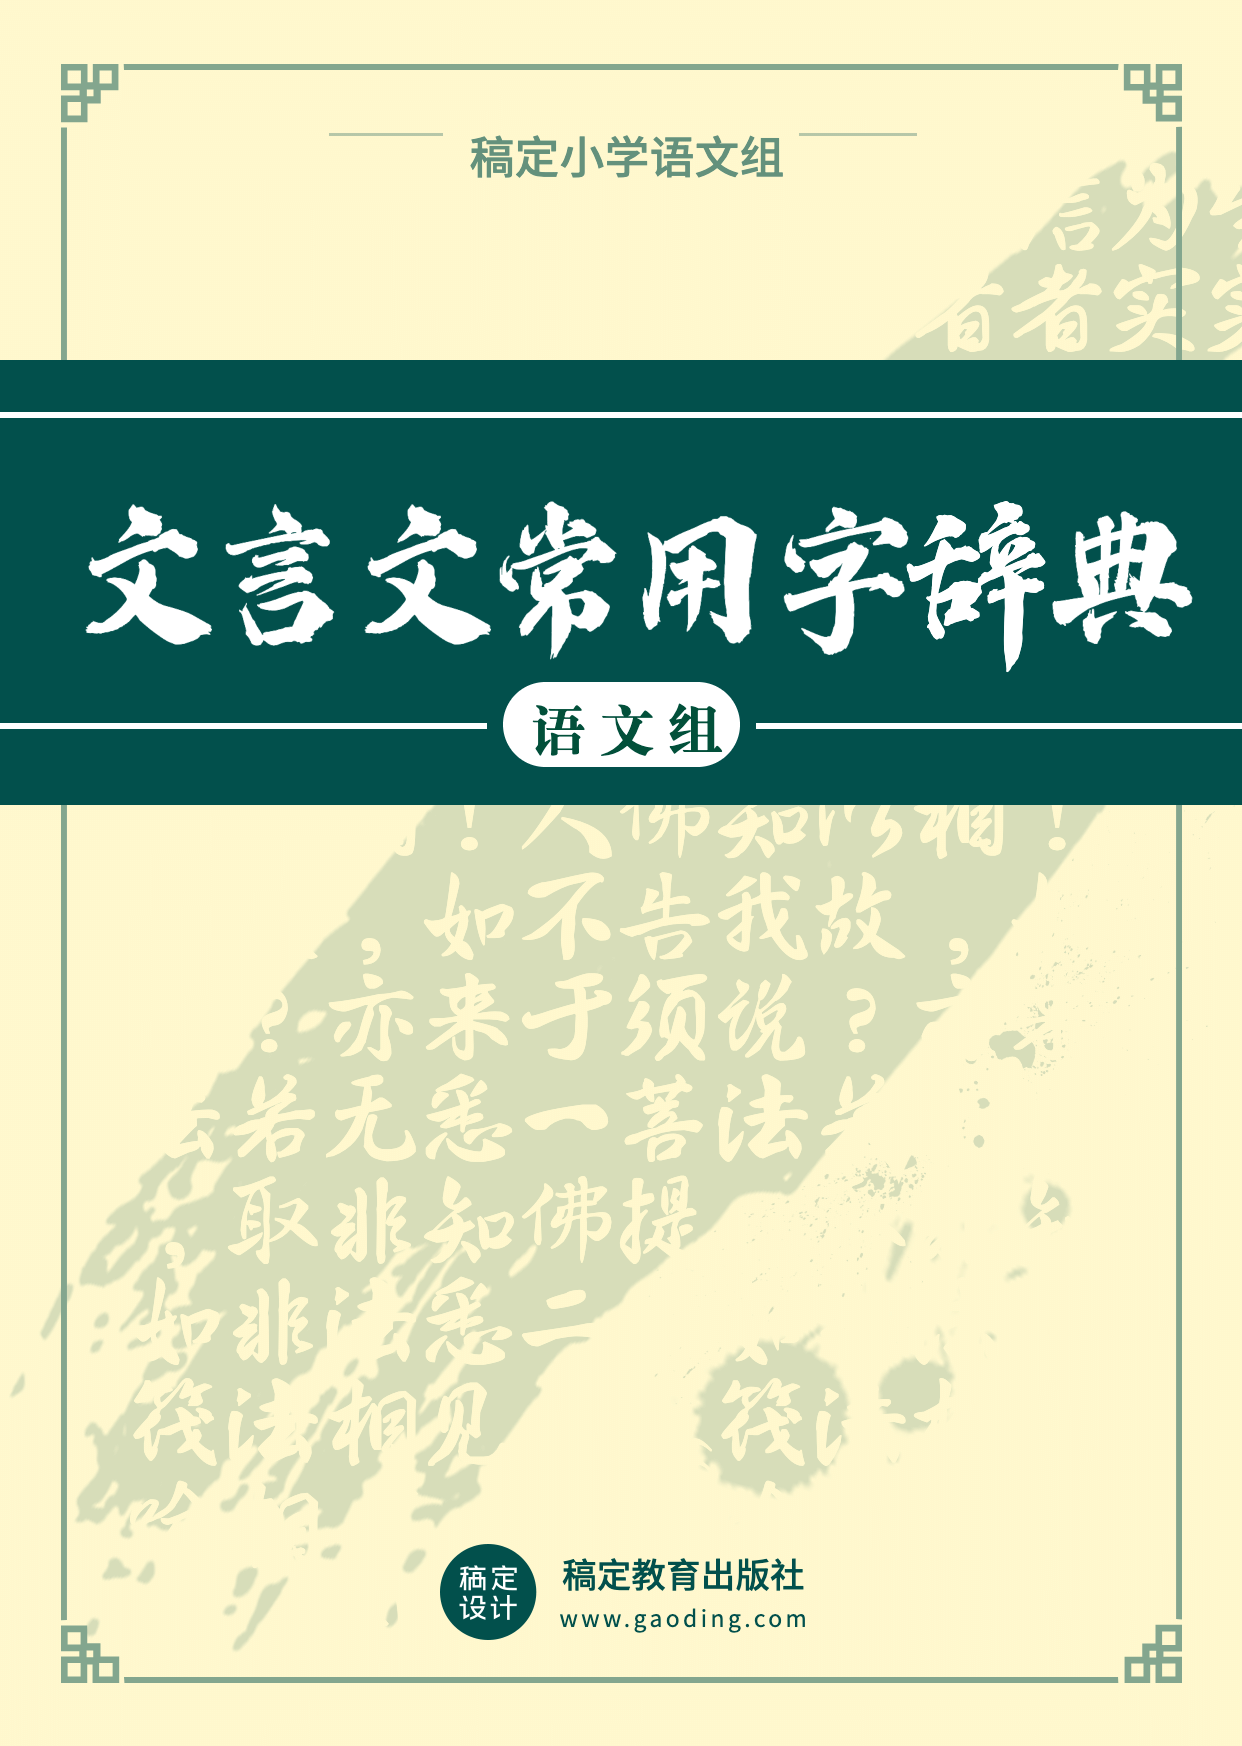 中小学教材古汉语词典书籍封面预览效果